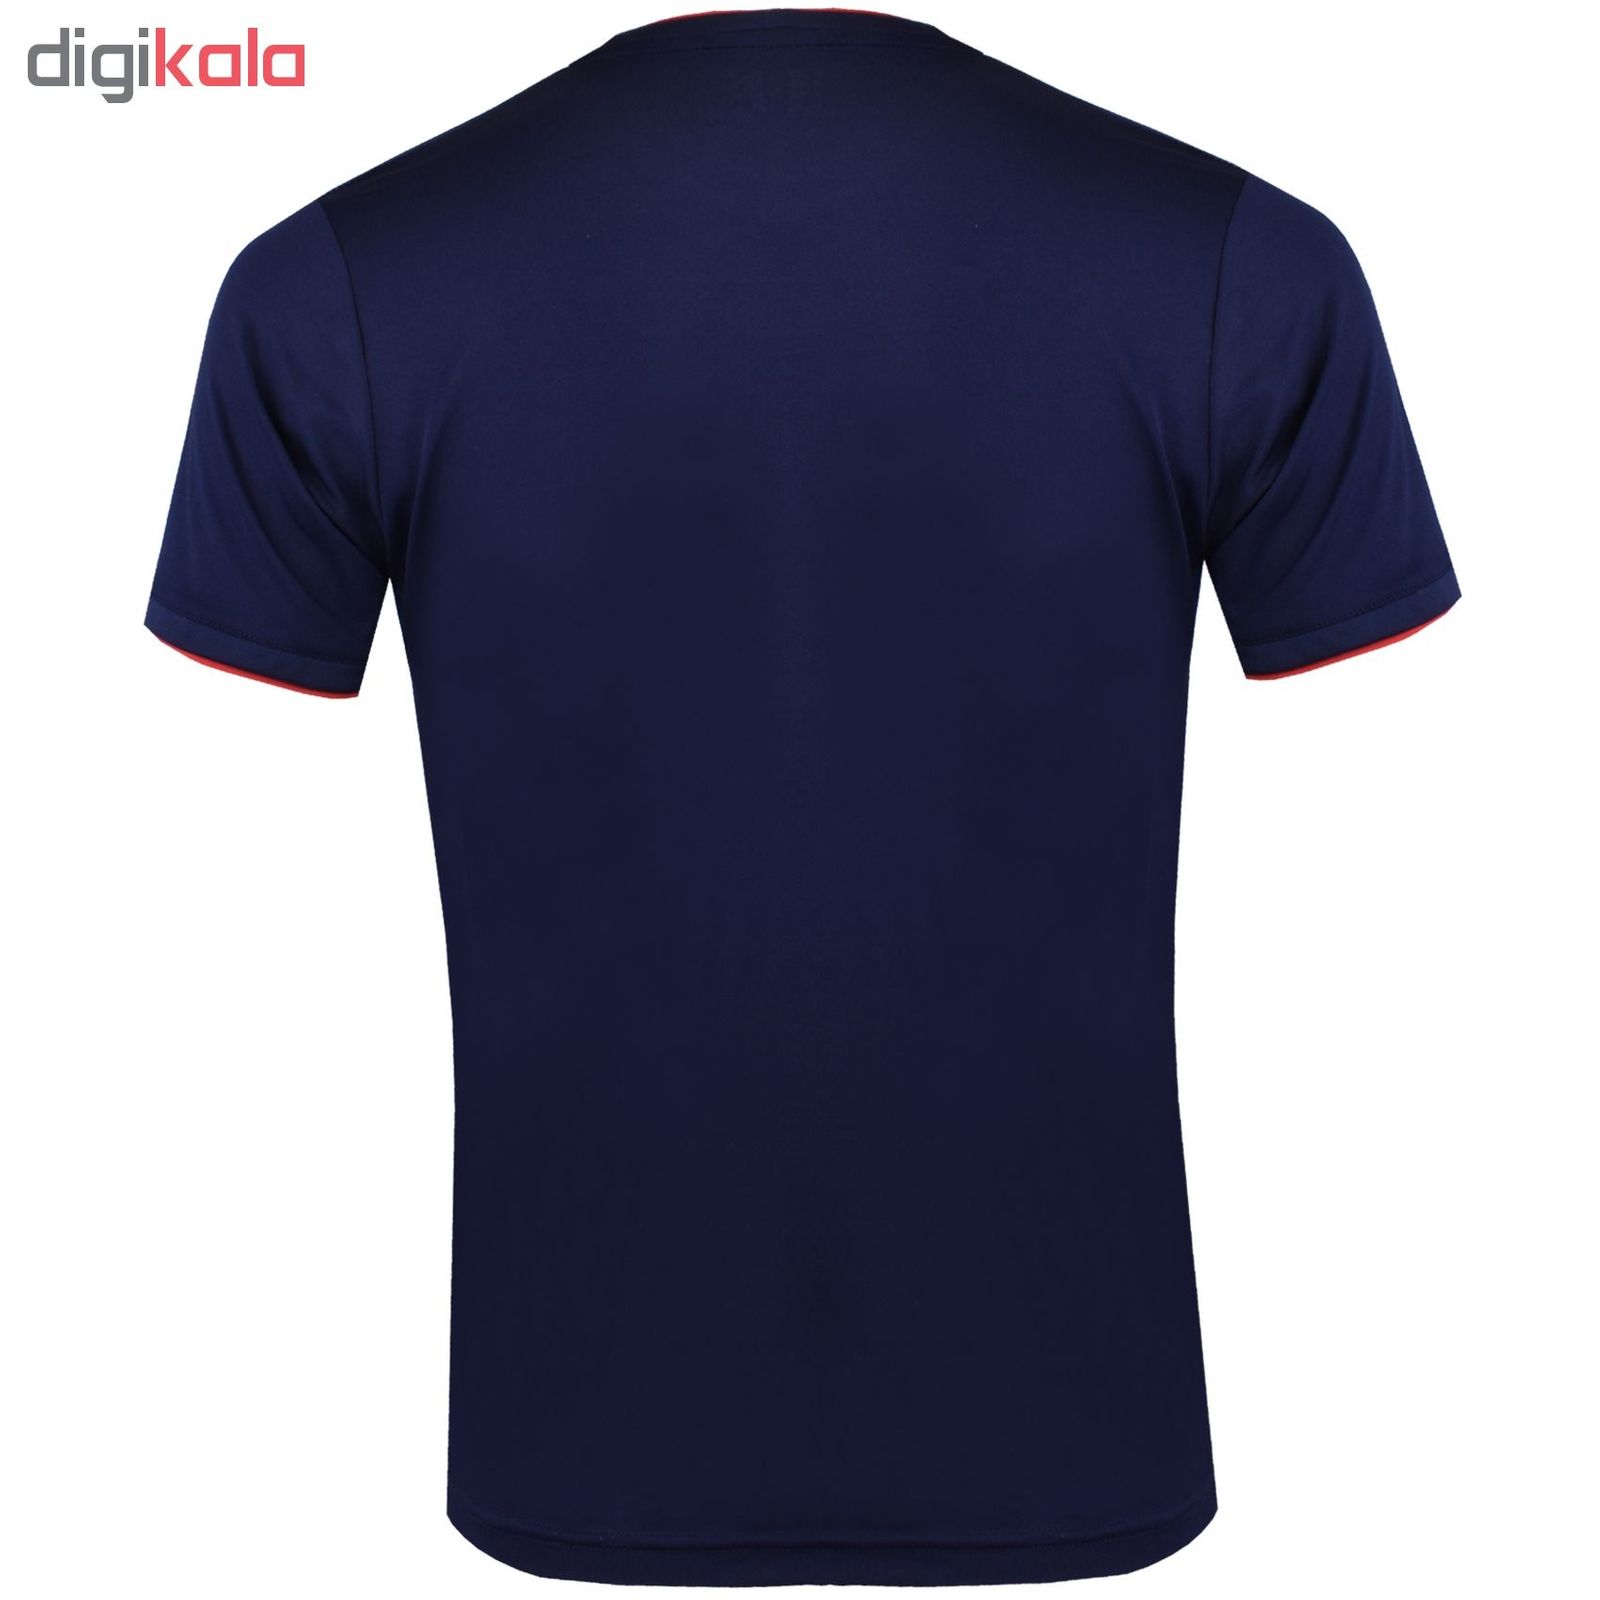 تی شرت ورزشی مردانه تکنیک پلاس 07 کد TS-139-SO-GH -  - 4